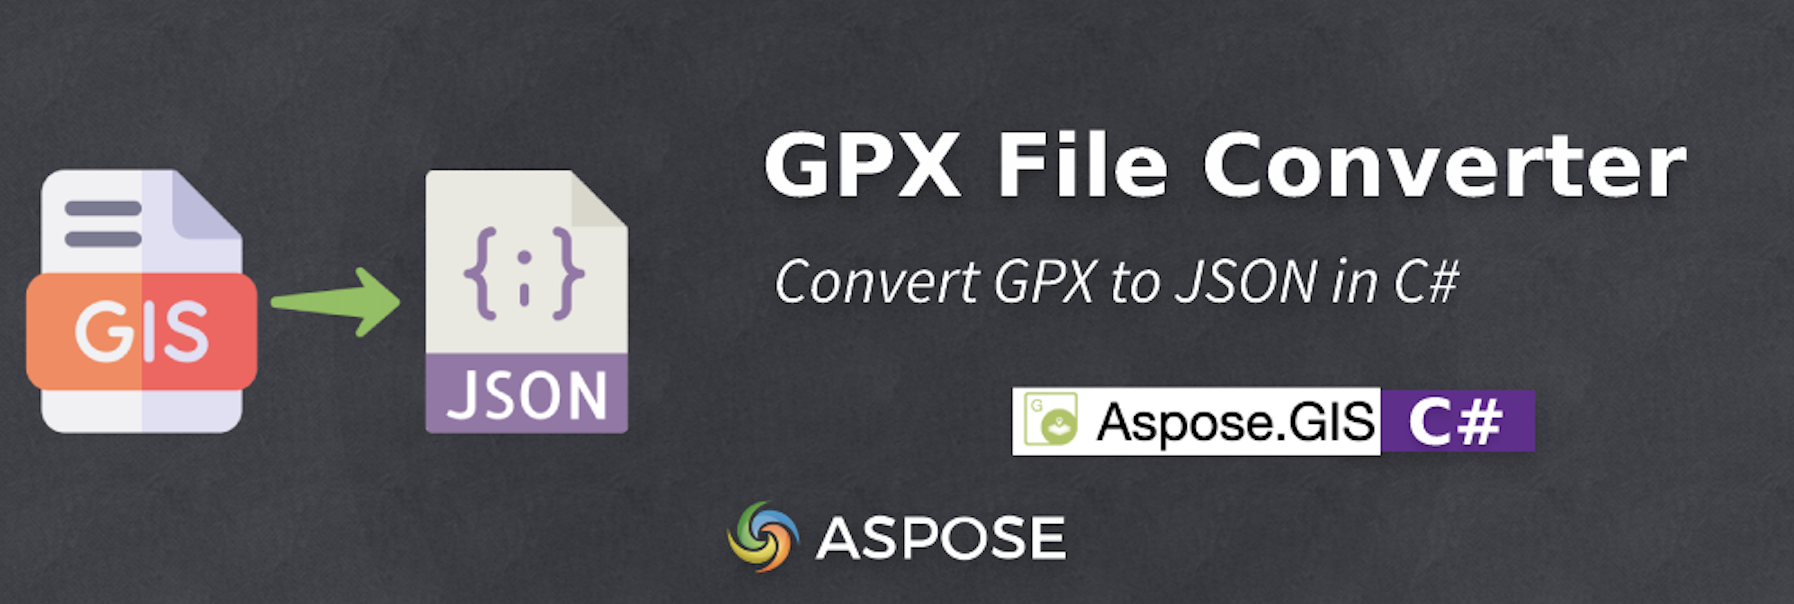 Chuyển đổi GPX sang JSON trong C# - Trình chuyển đổi tệp GPX